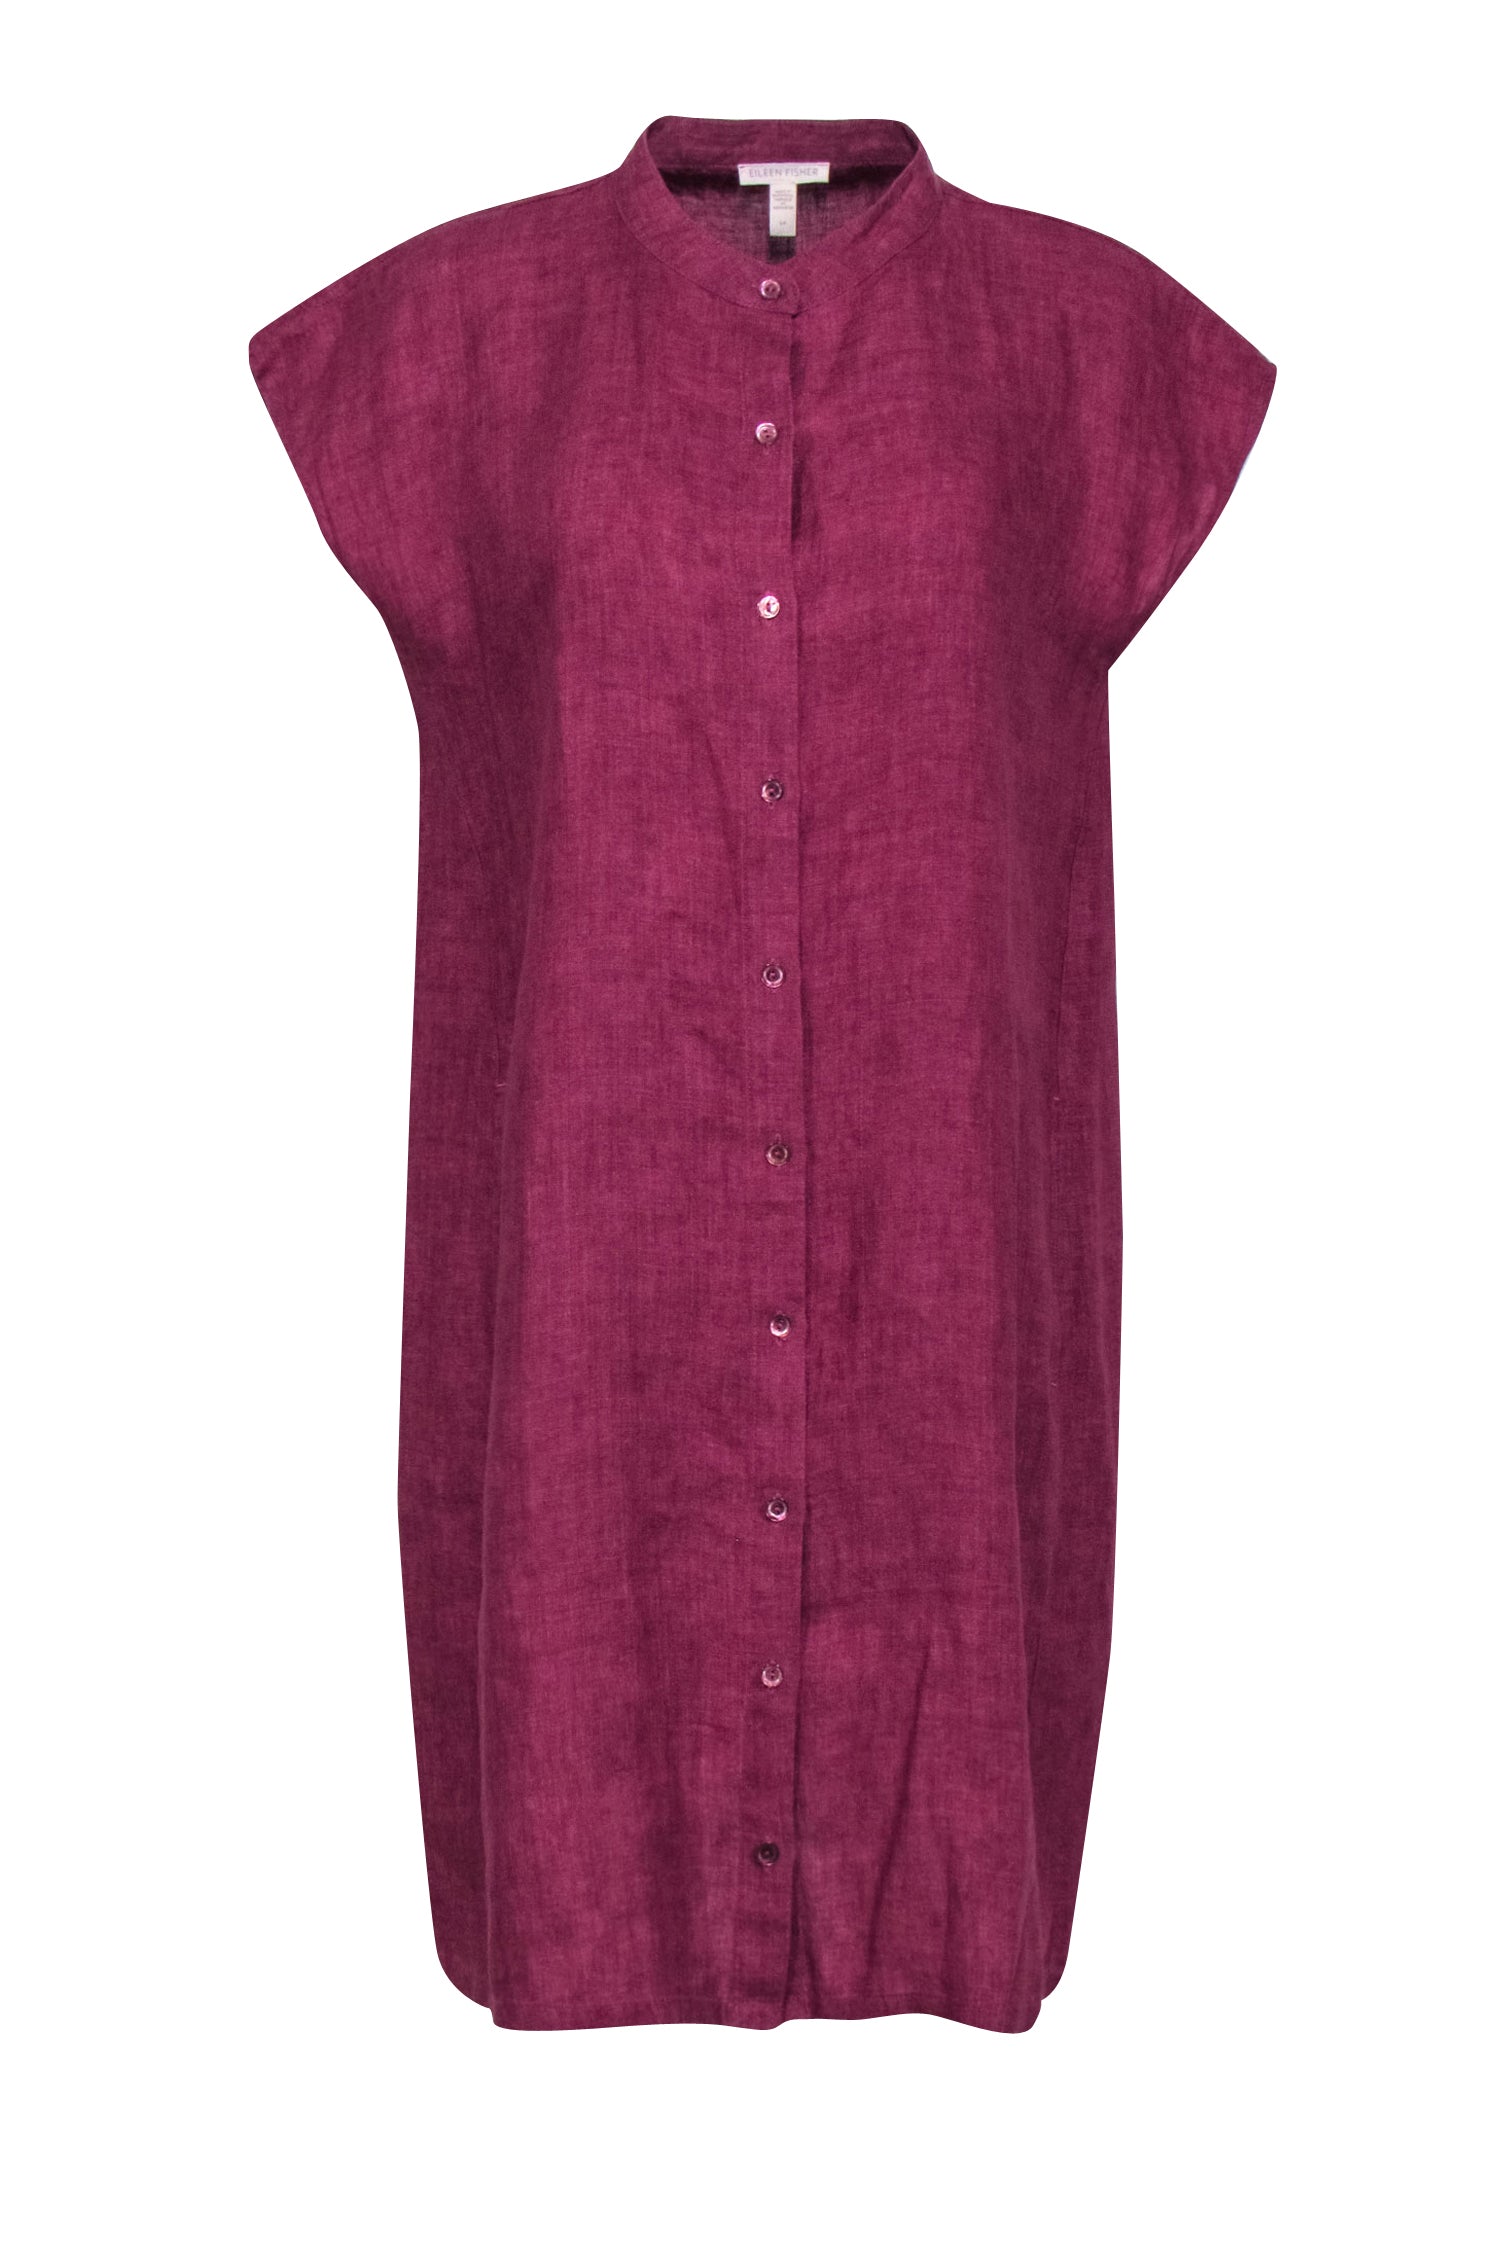 Eileen Fisher - Purple Organic Linen Button Front Dress Sz S